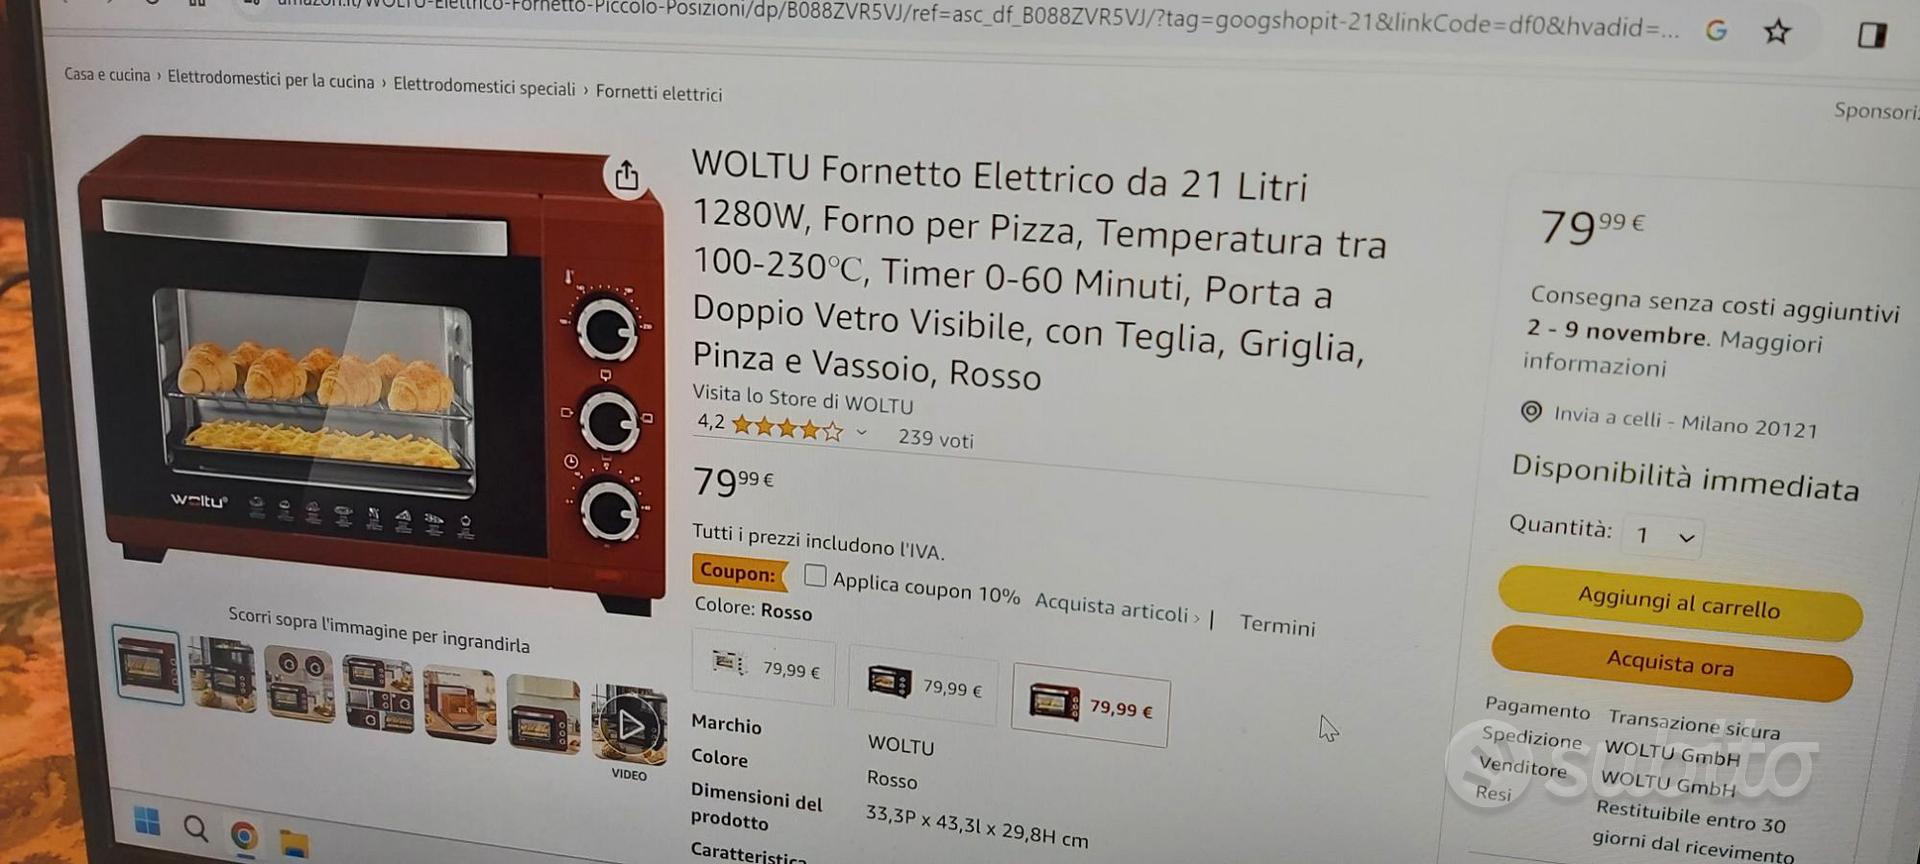 fornetto WOLTU COLOR ROSSO LITRI 21 - Elettrodomestici In vendita a Milano